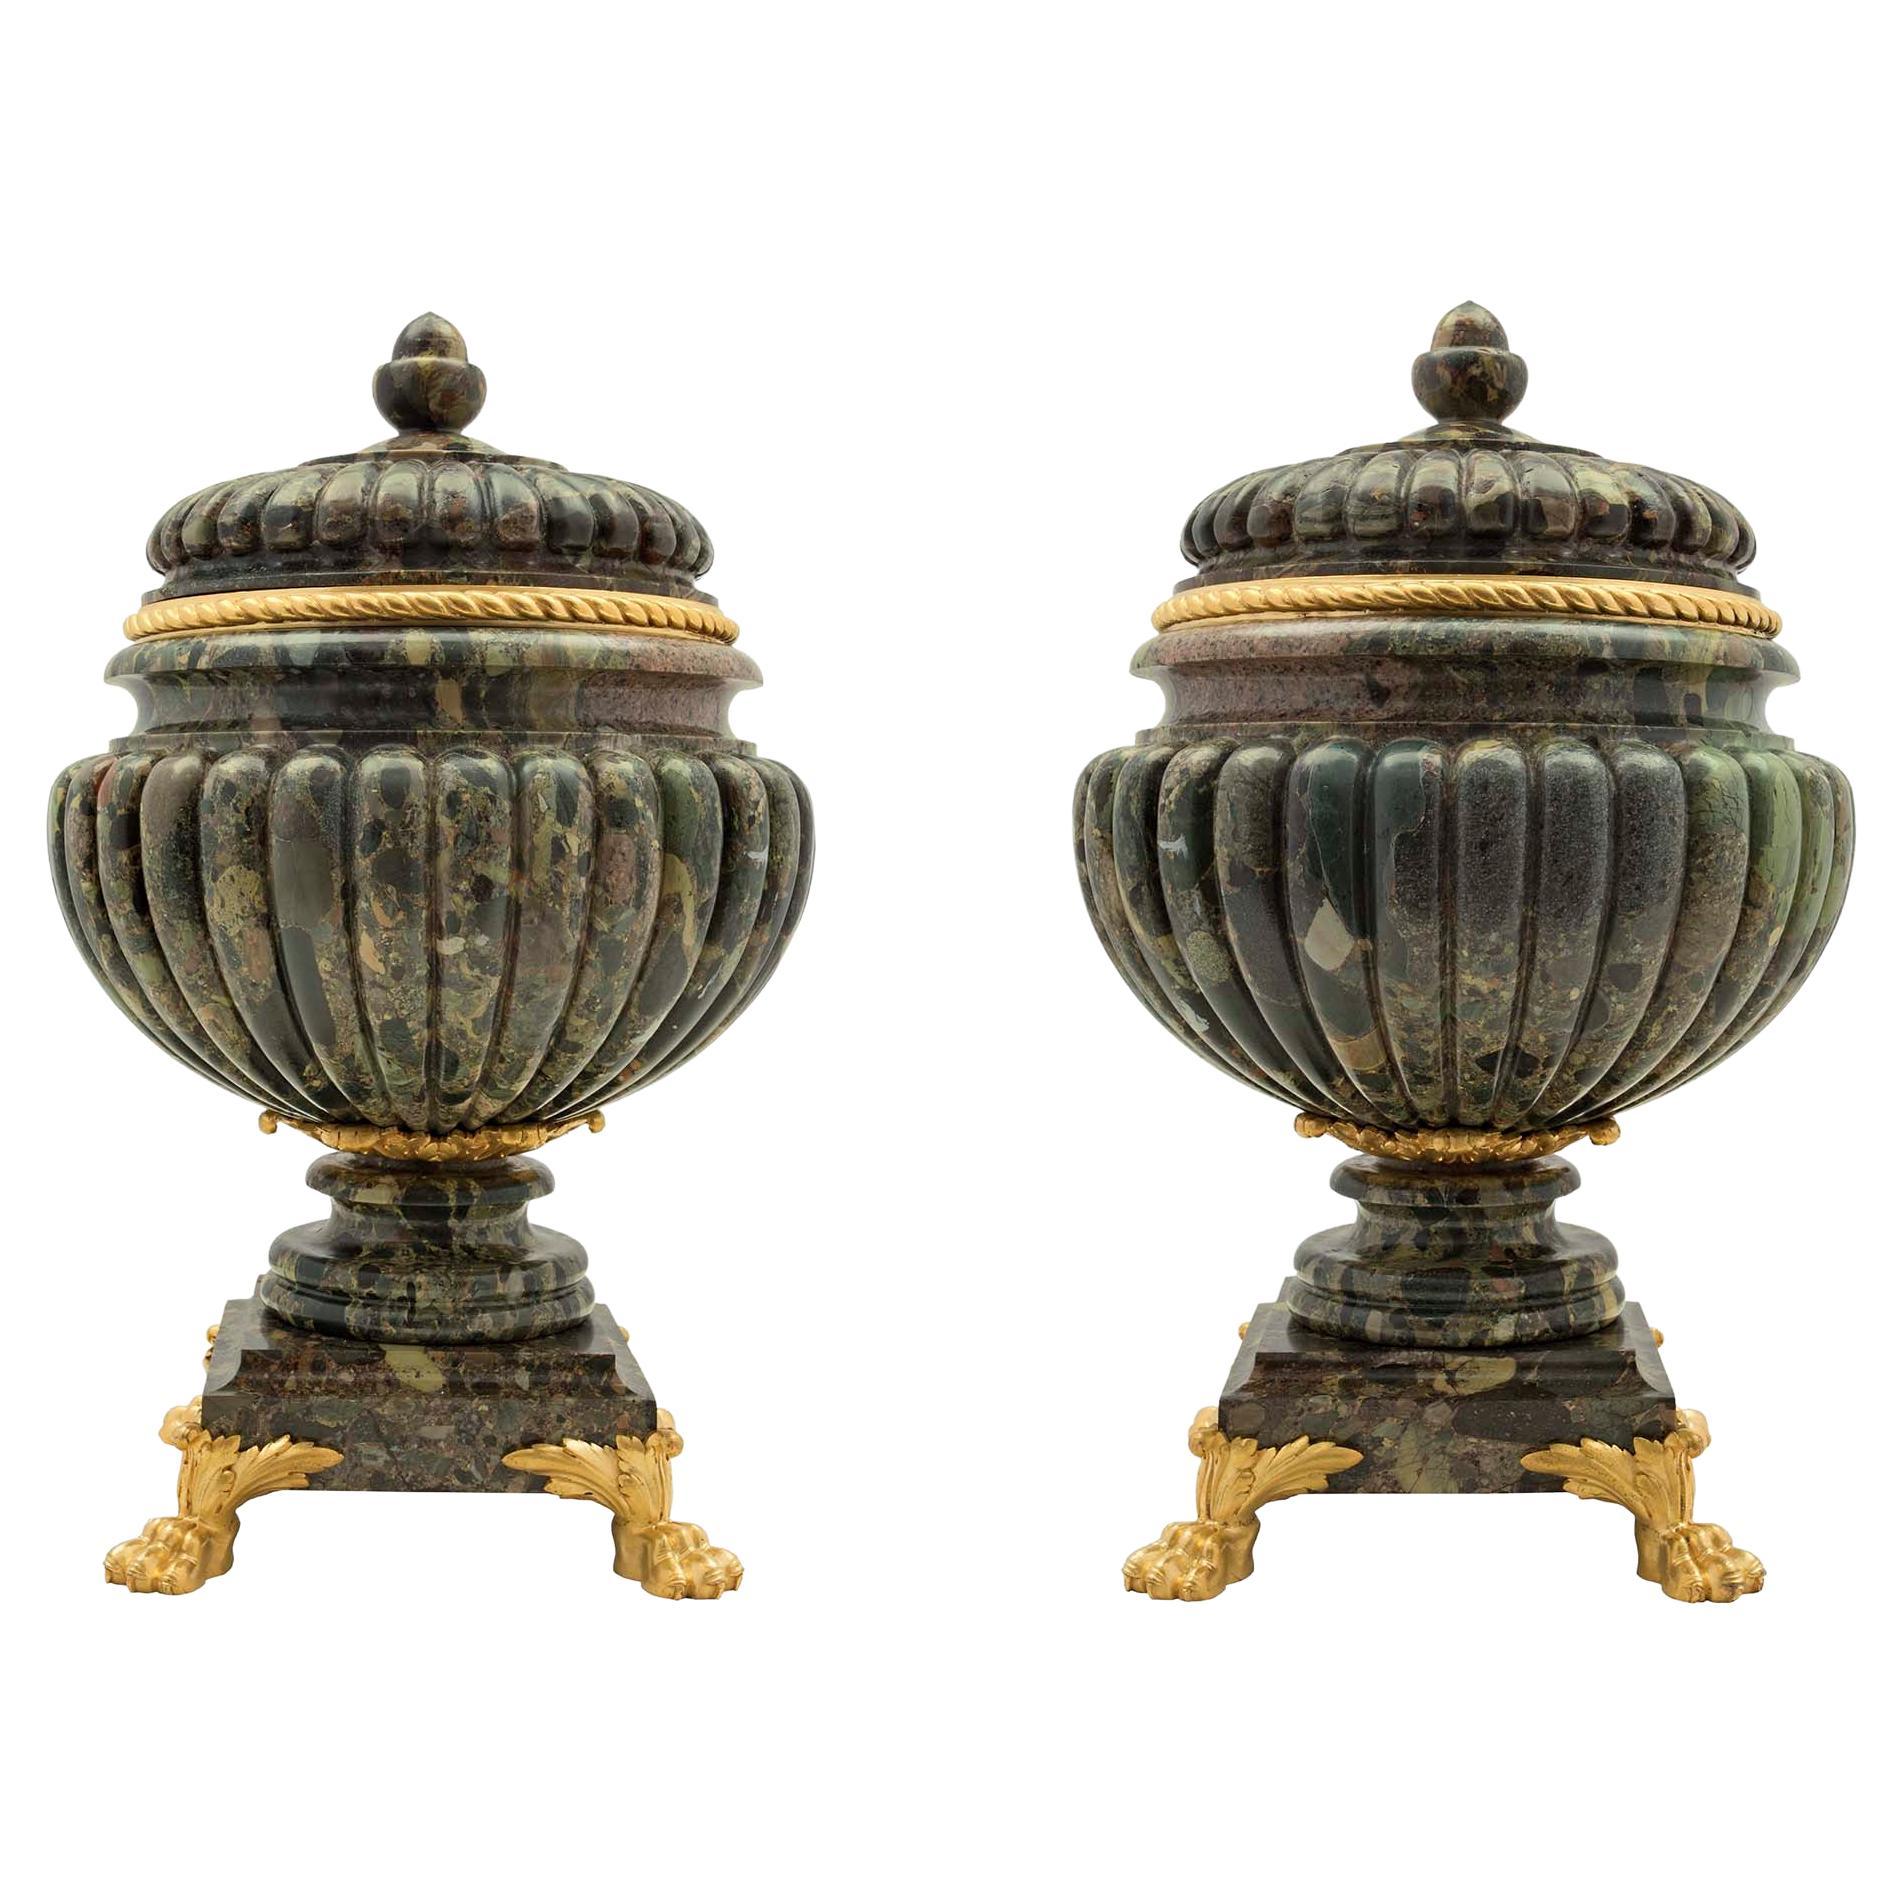 Paire d'urnes de style néoclassique français du 19ème siècle en marbre et bronze doré